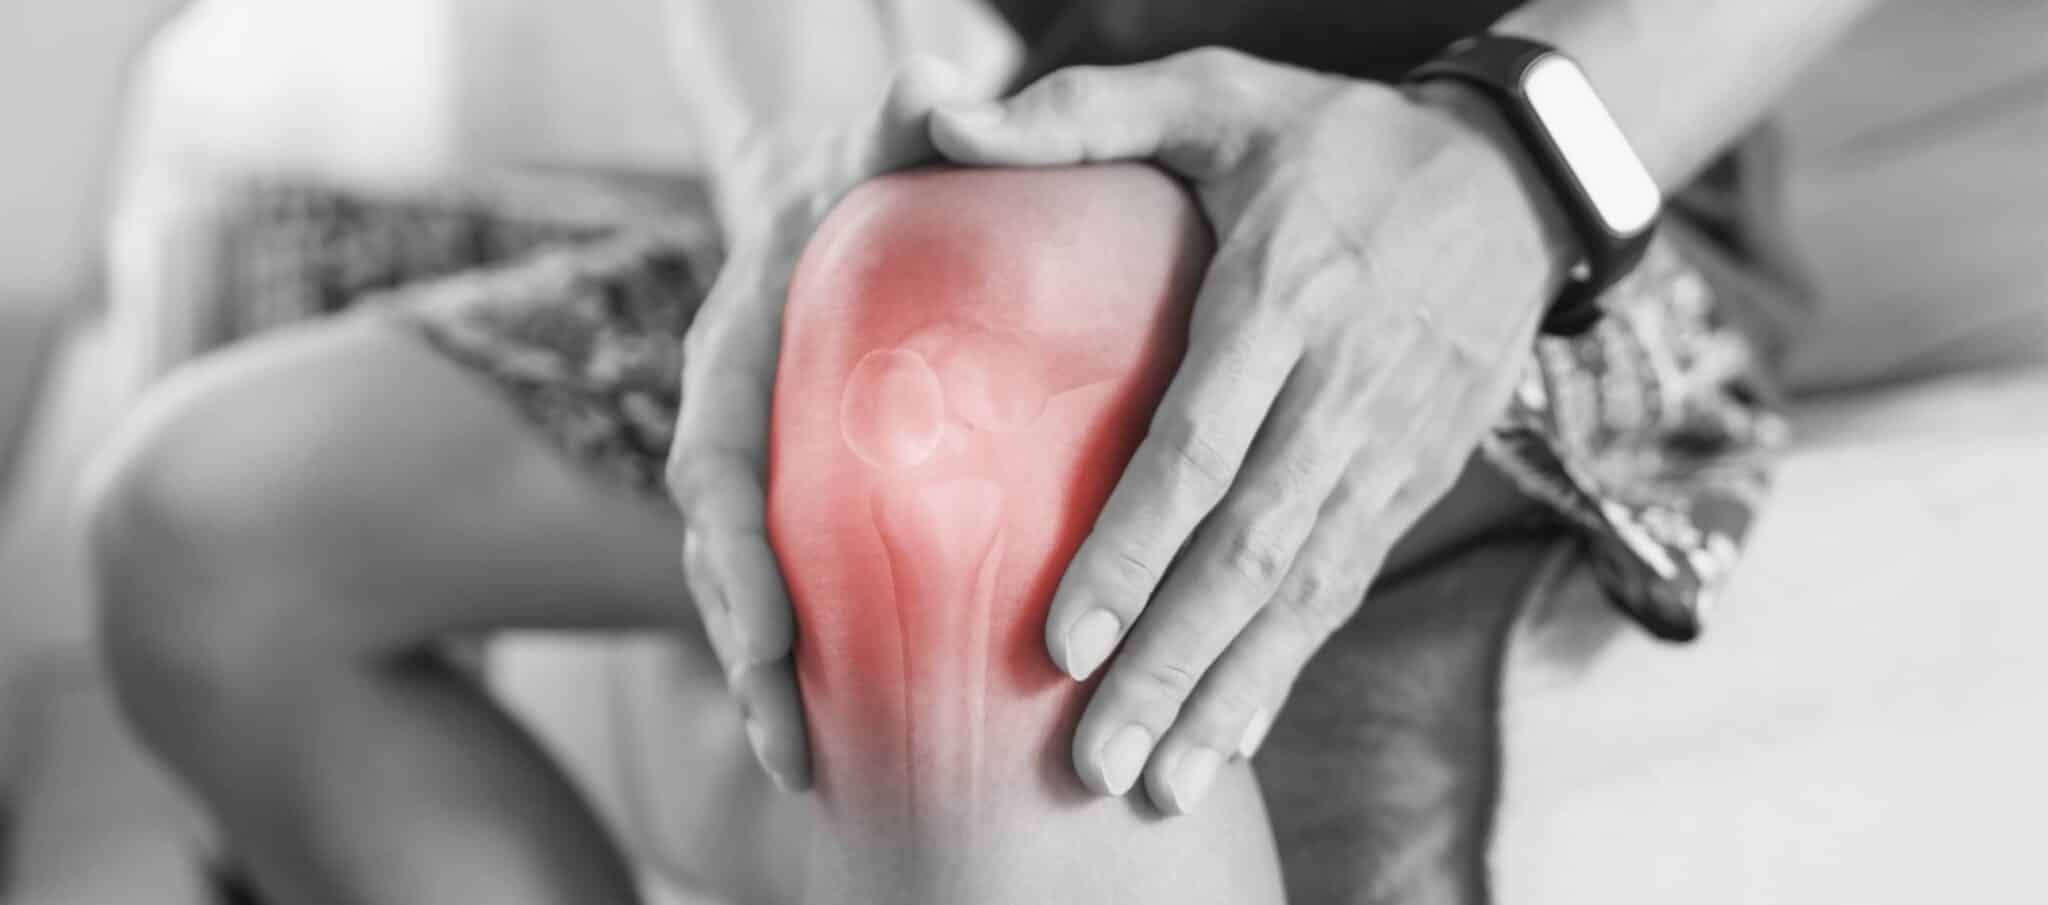 Sportifs professionnels : les blessures du genou les plus fréquentes | Dr Paillard | Paris